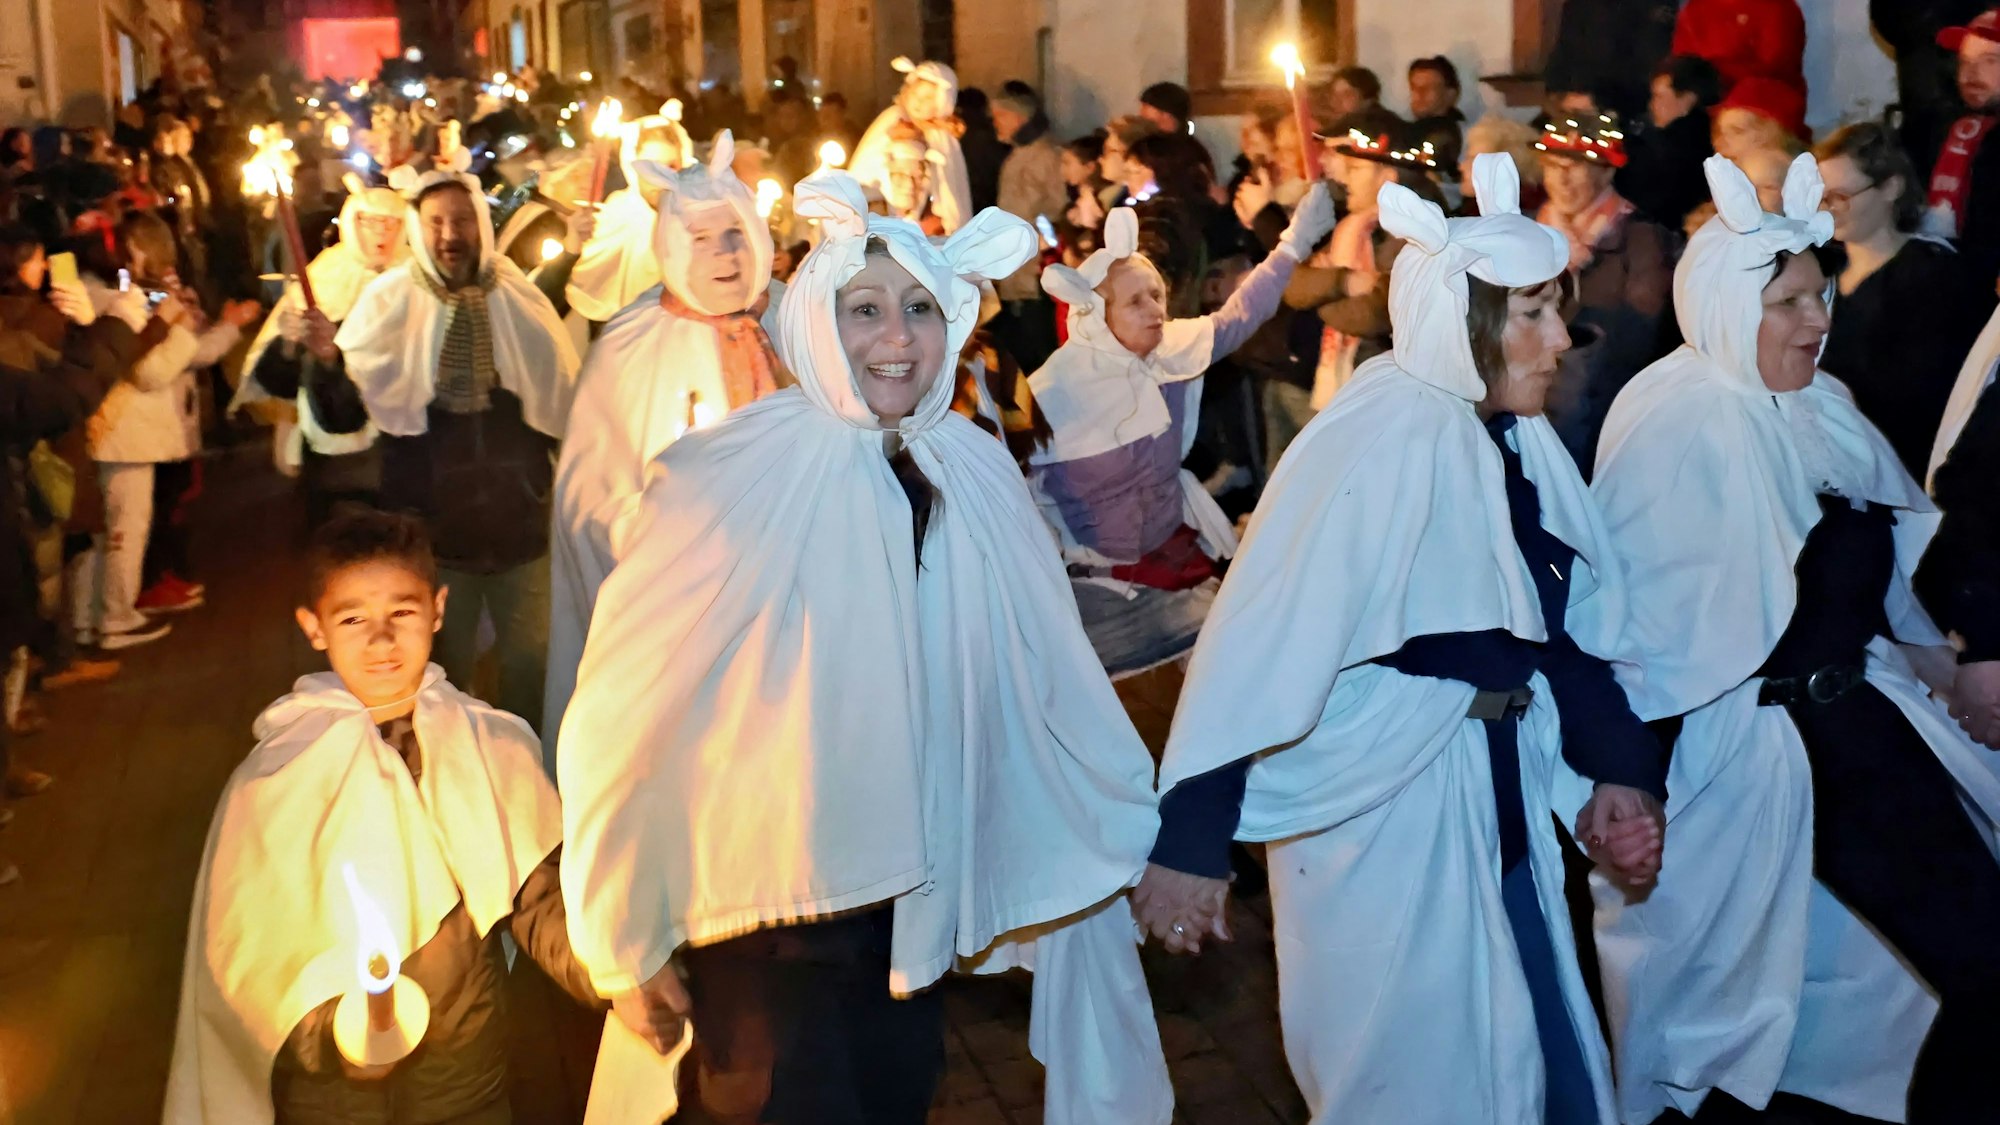 Der Zug der Geister zieht kreischend durch die Straßen von Blankenheim. In dem Traditionszug sind die Teilnehmer mit weißen Bettlaken verkleidet. Viele haben Pechfackeln in der Hand.